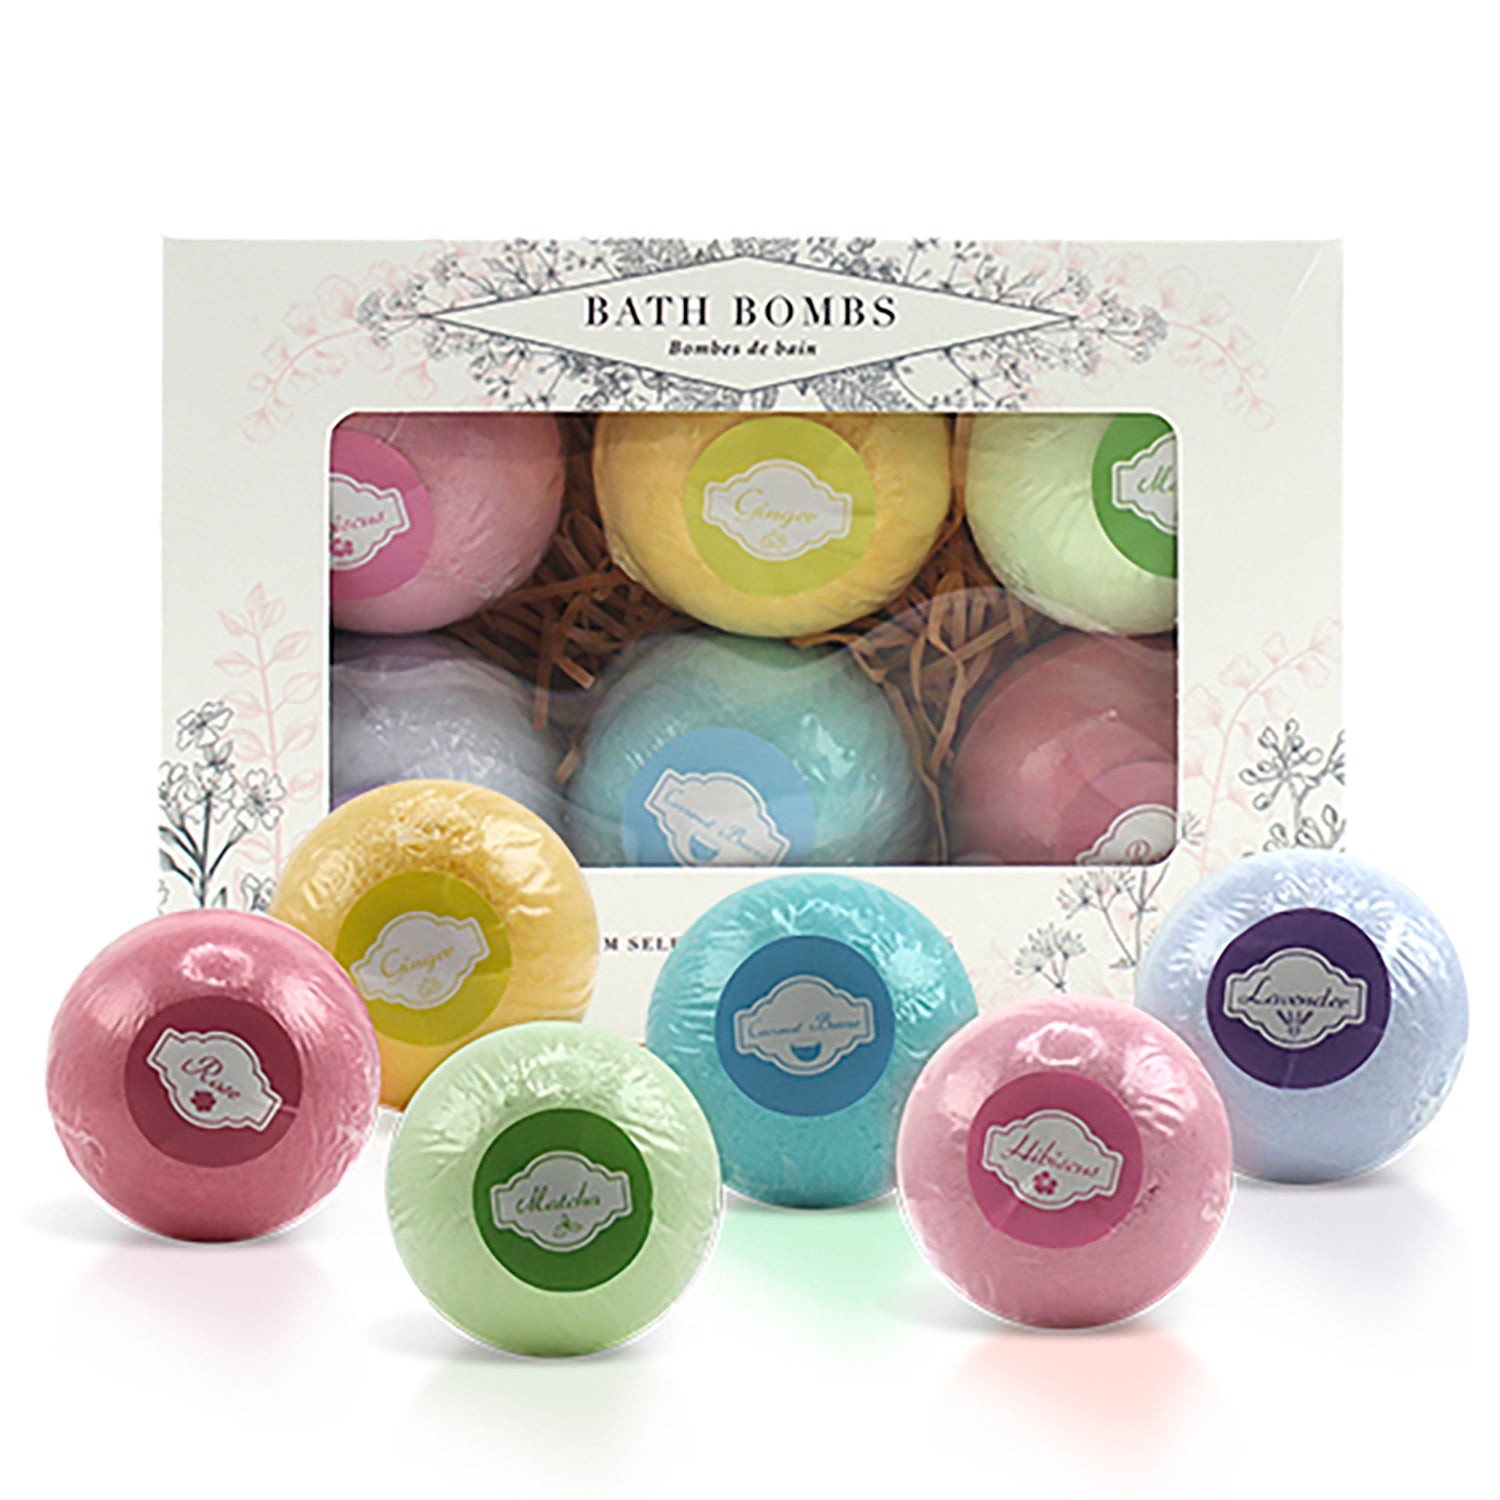 BeautyFrizz Bath bomb gift set